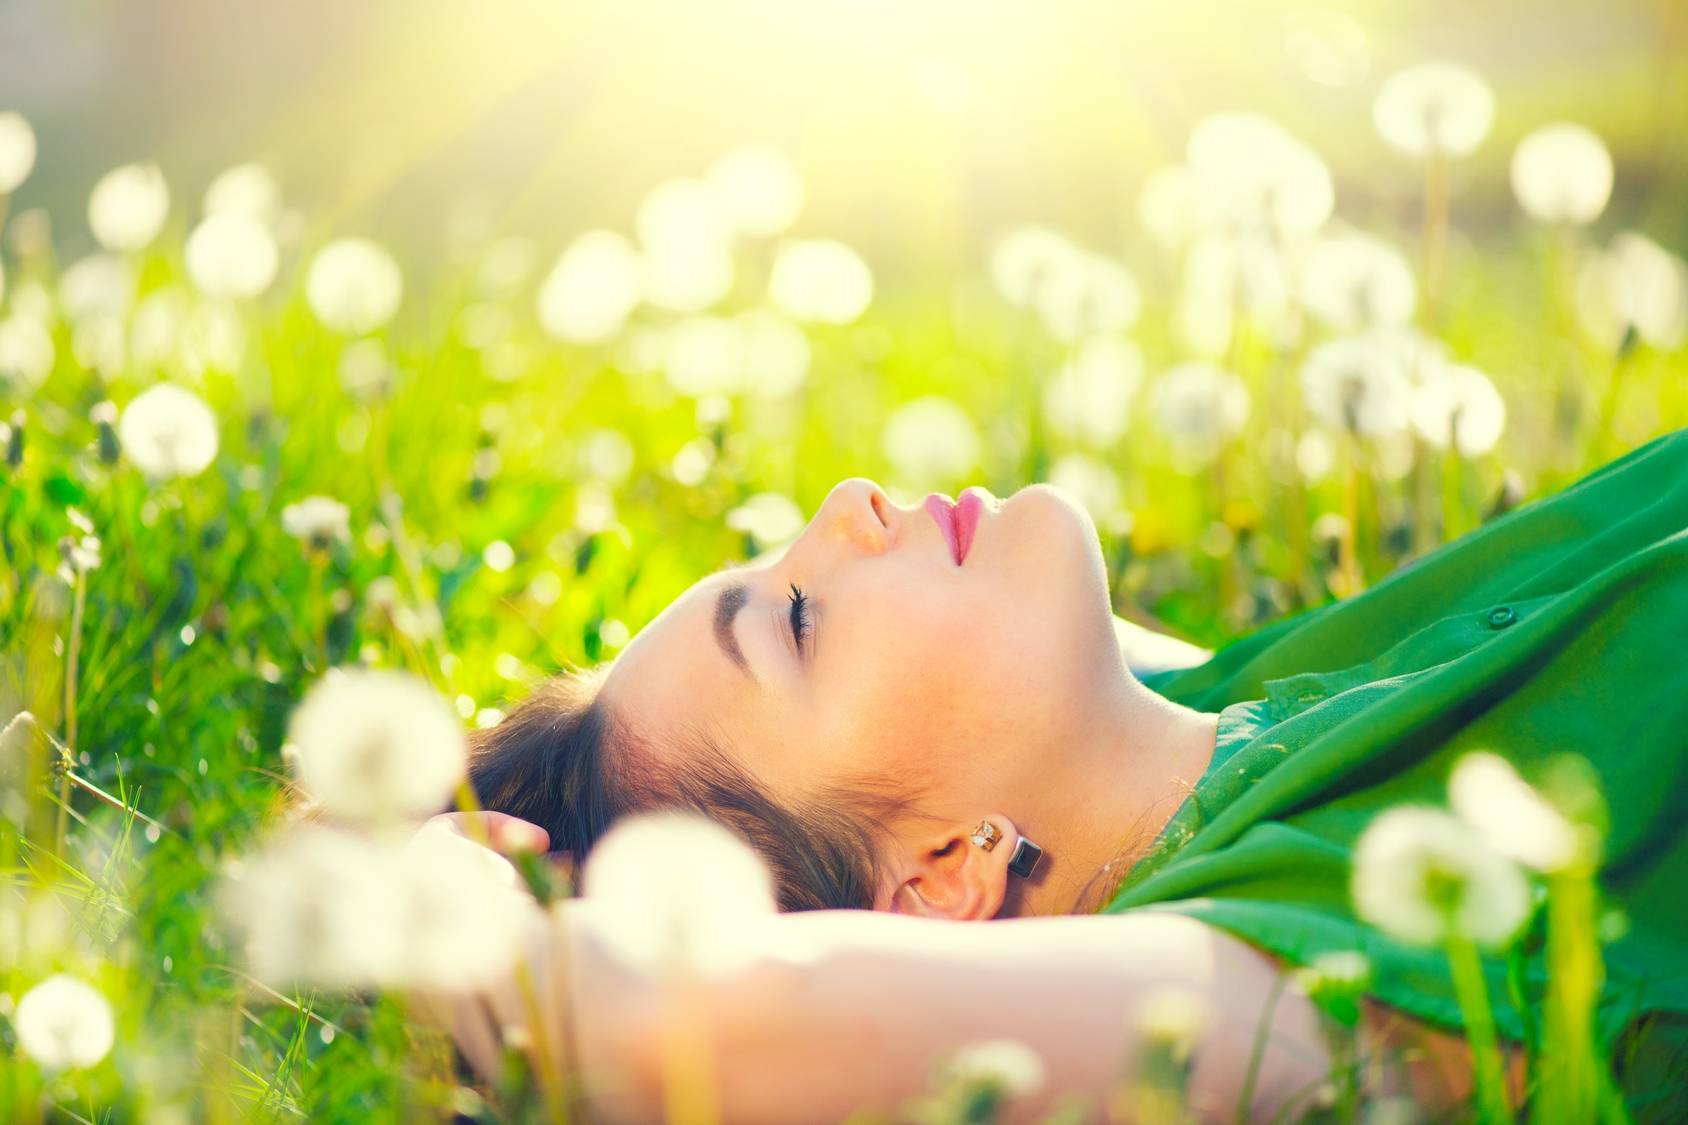 Kalendarz pylenia roślin - alergia na pyłki. Młoda, zamyślona i szczęśliwa kobieta w zielonej bluzce leży na trawie wśróddmuchawców.